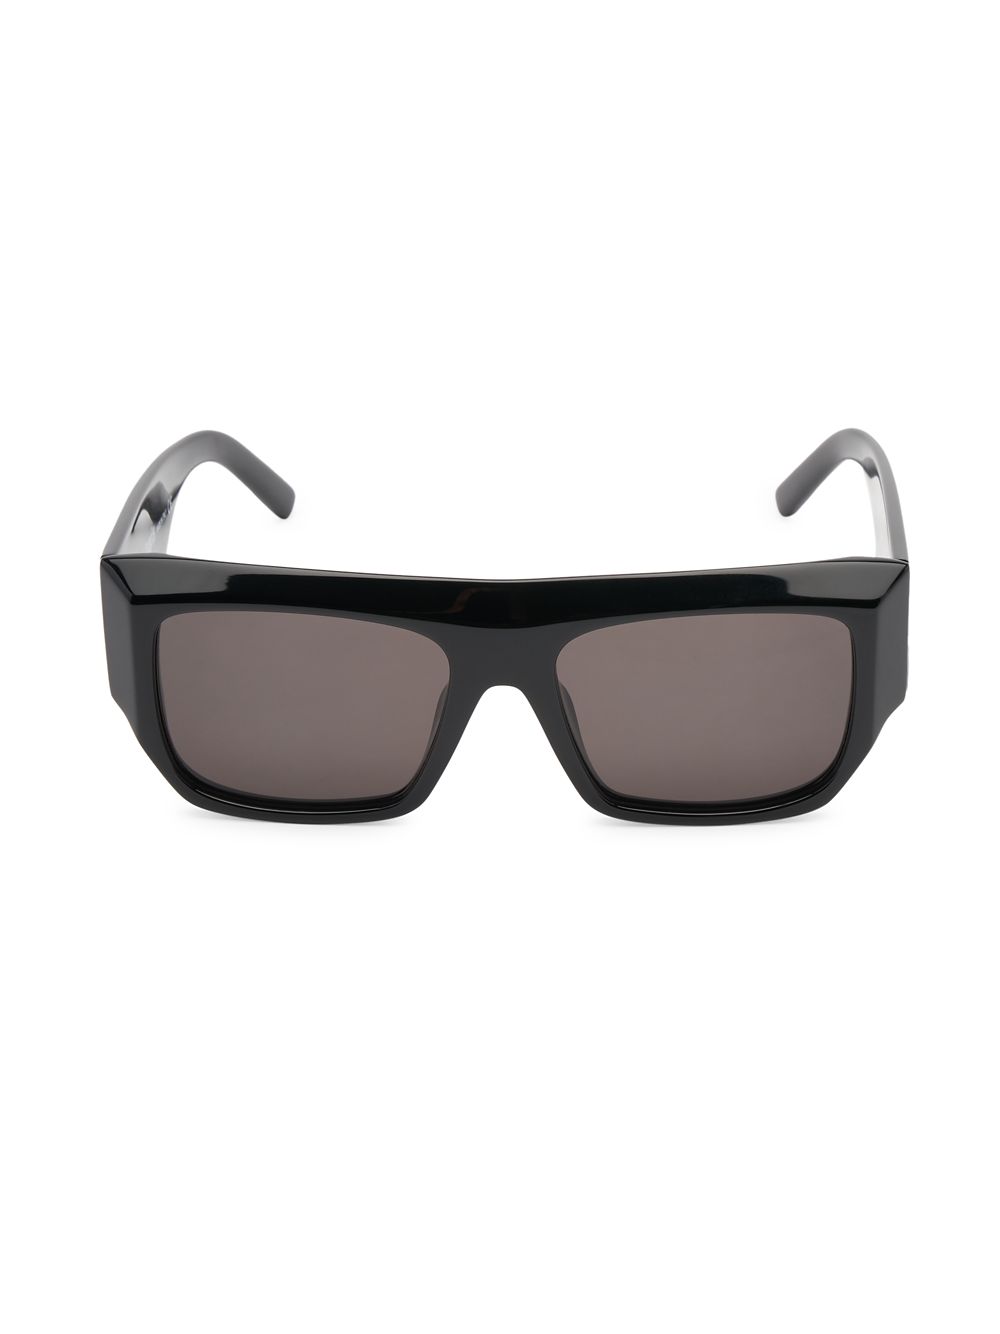 Прямоугольные солнцезащитные очки Blanca 144 мм Palm Angels, черный